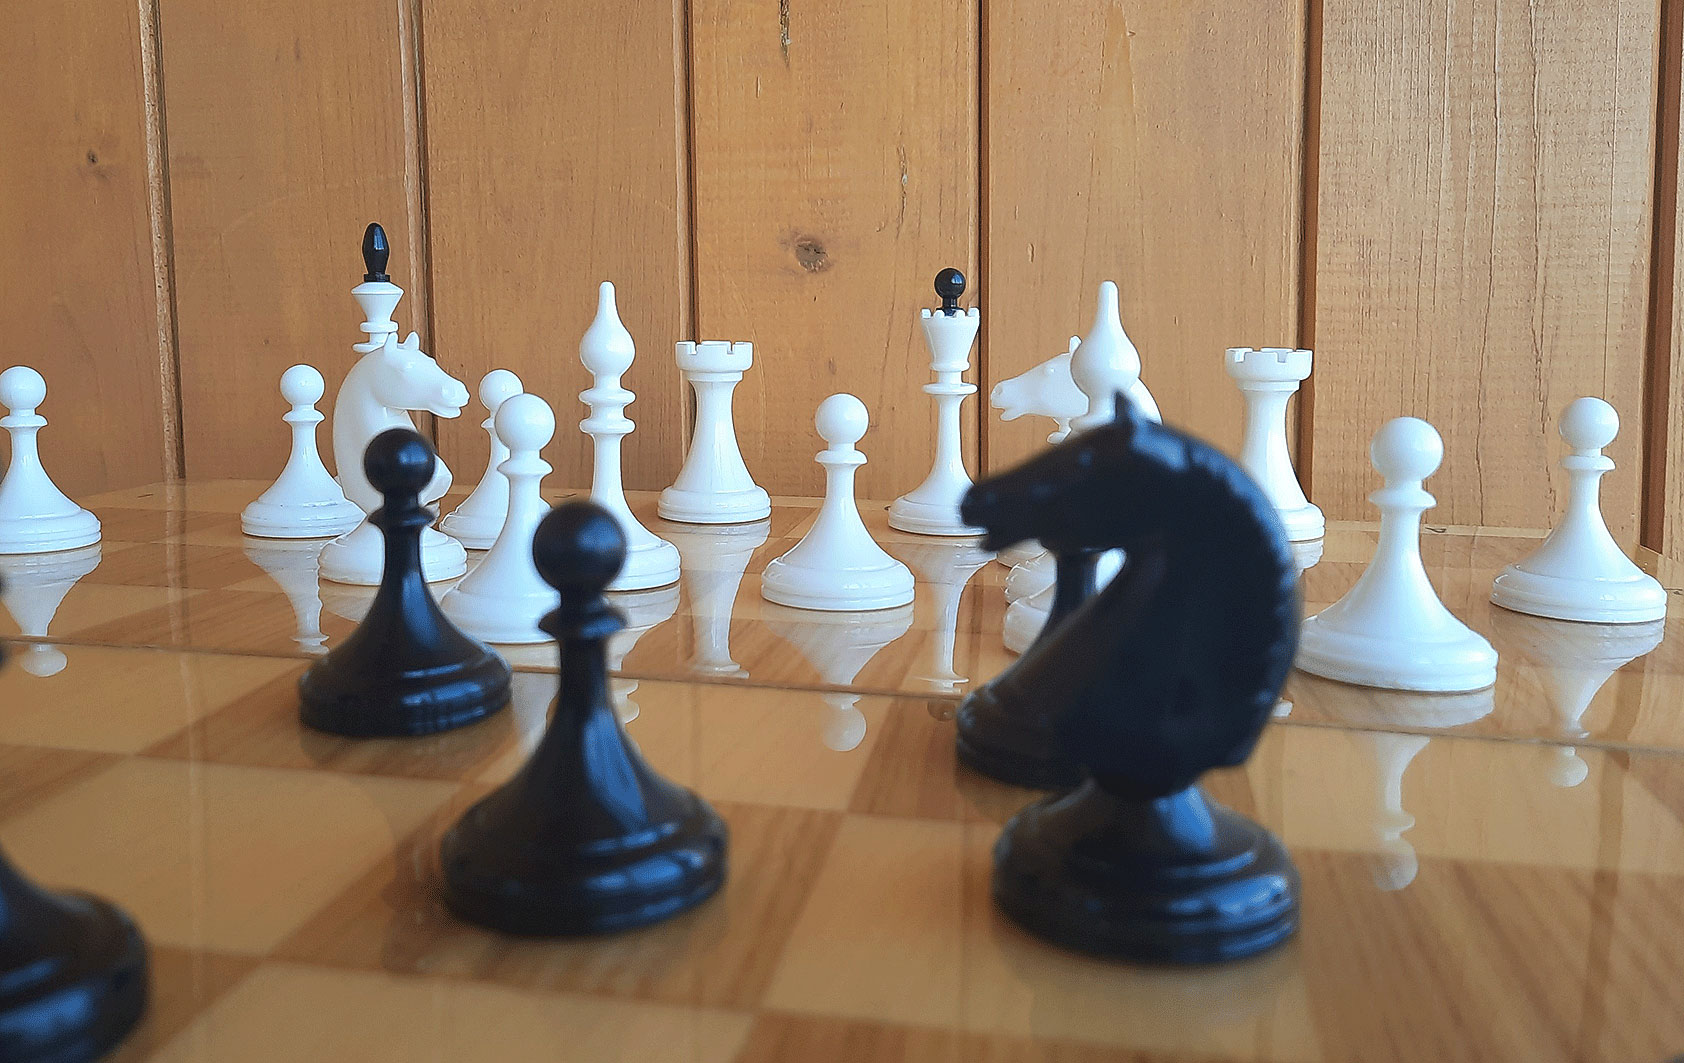 soviet chess set wooden board plastic chessmen